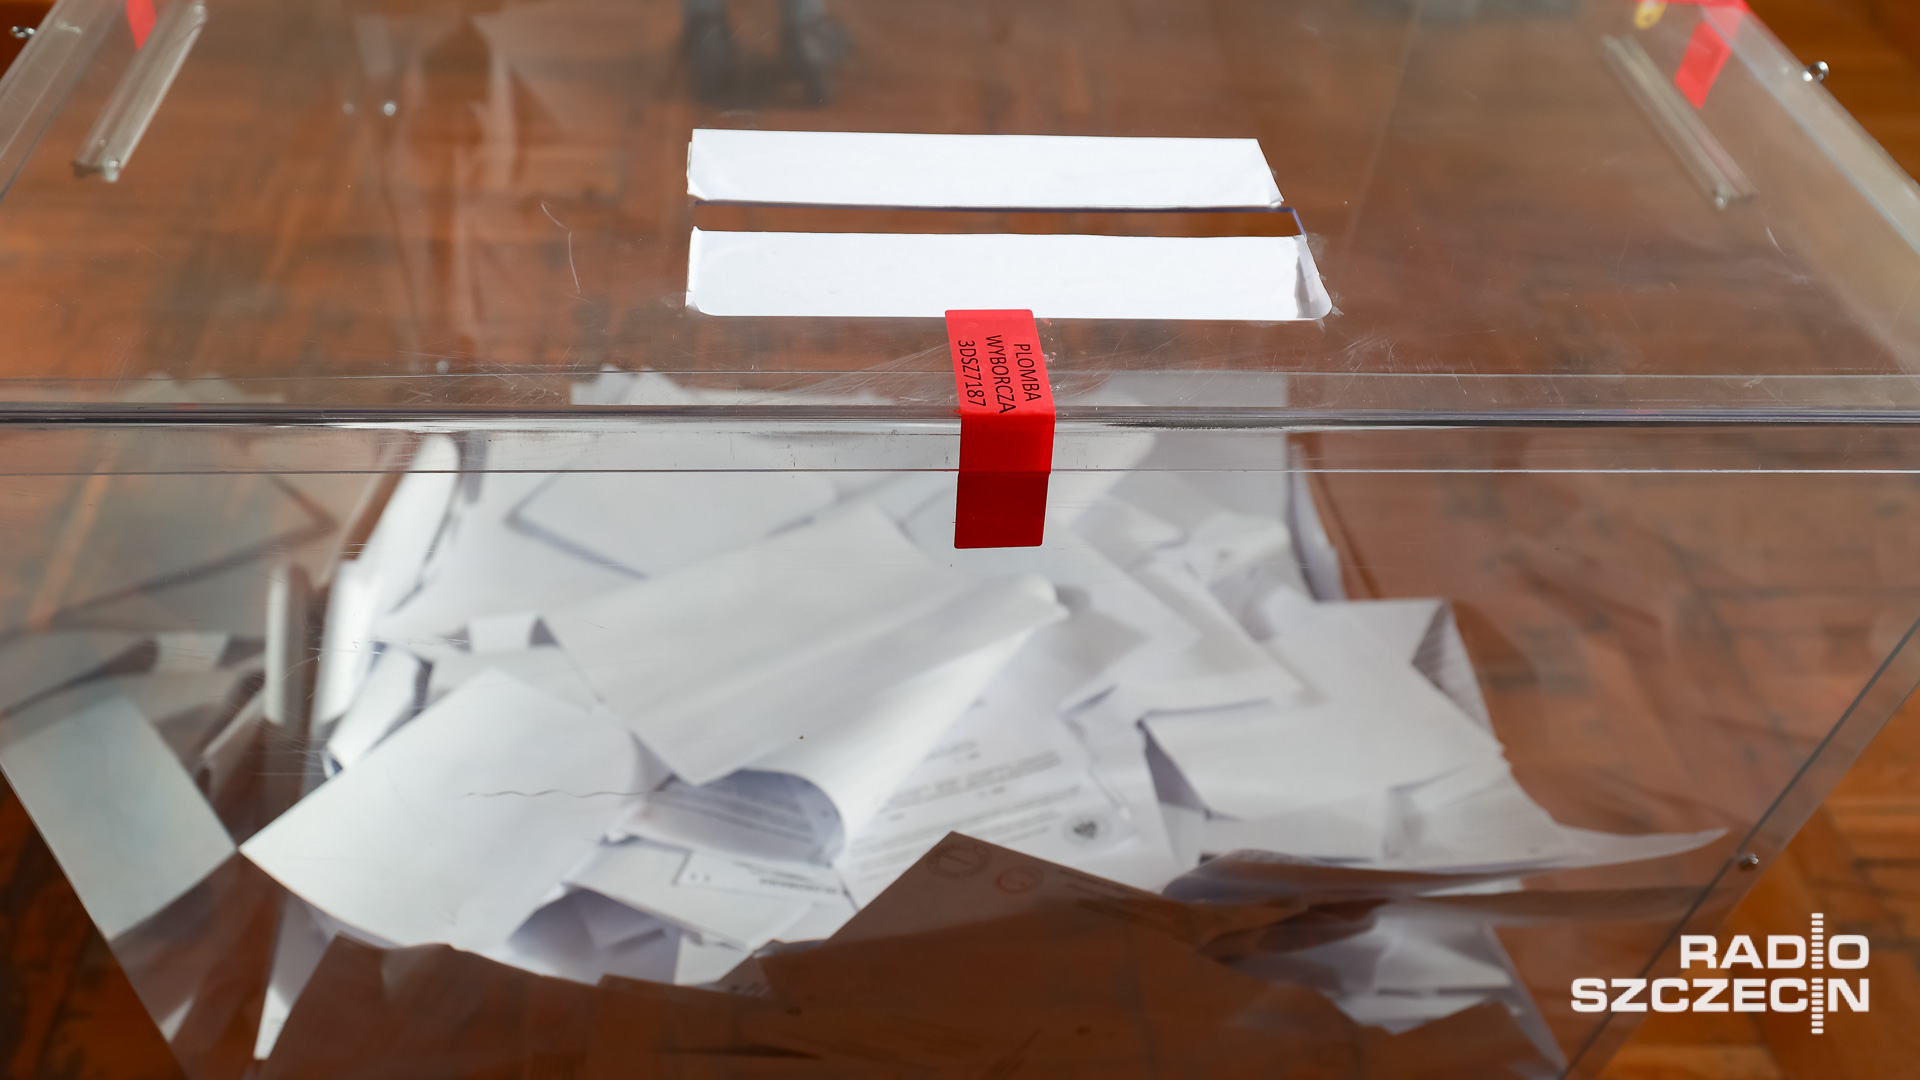 Wtorek, być może środa - wówczas Państwowa Komisja Wyborcza planuje sporządzenie zbiorczego protokołu z wynikami wyborów samorządowych.